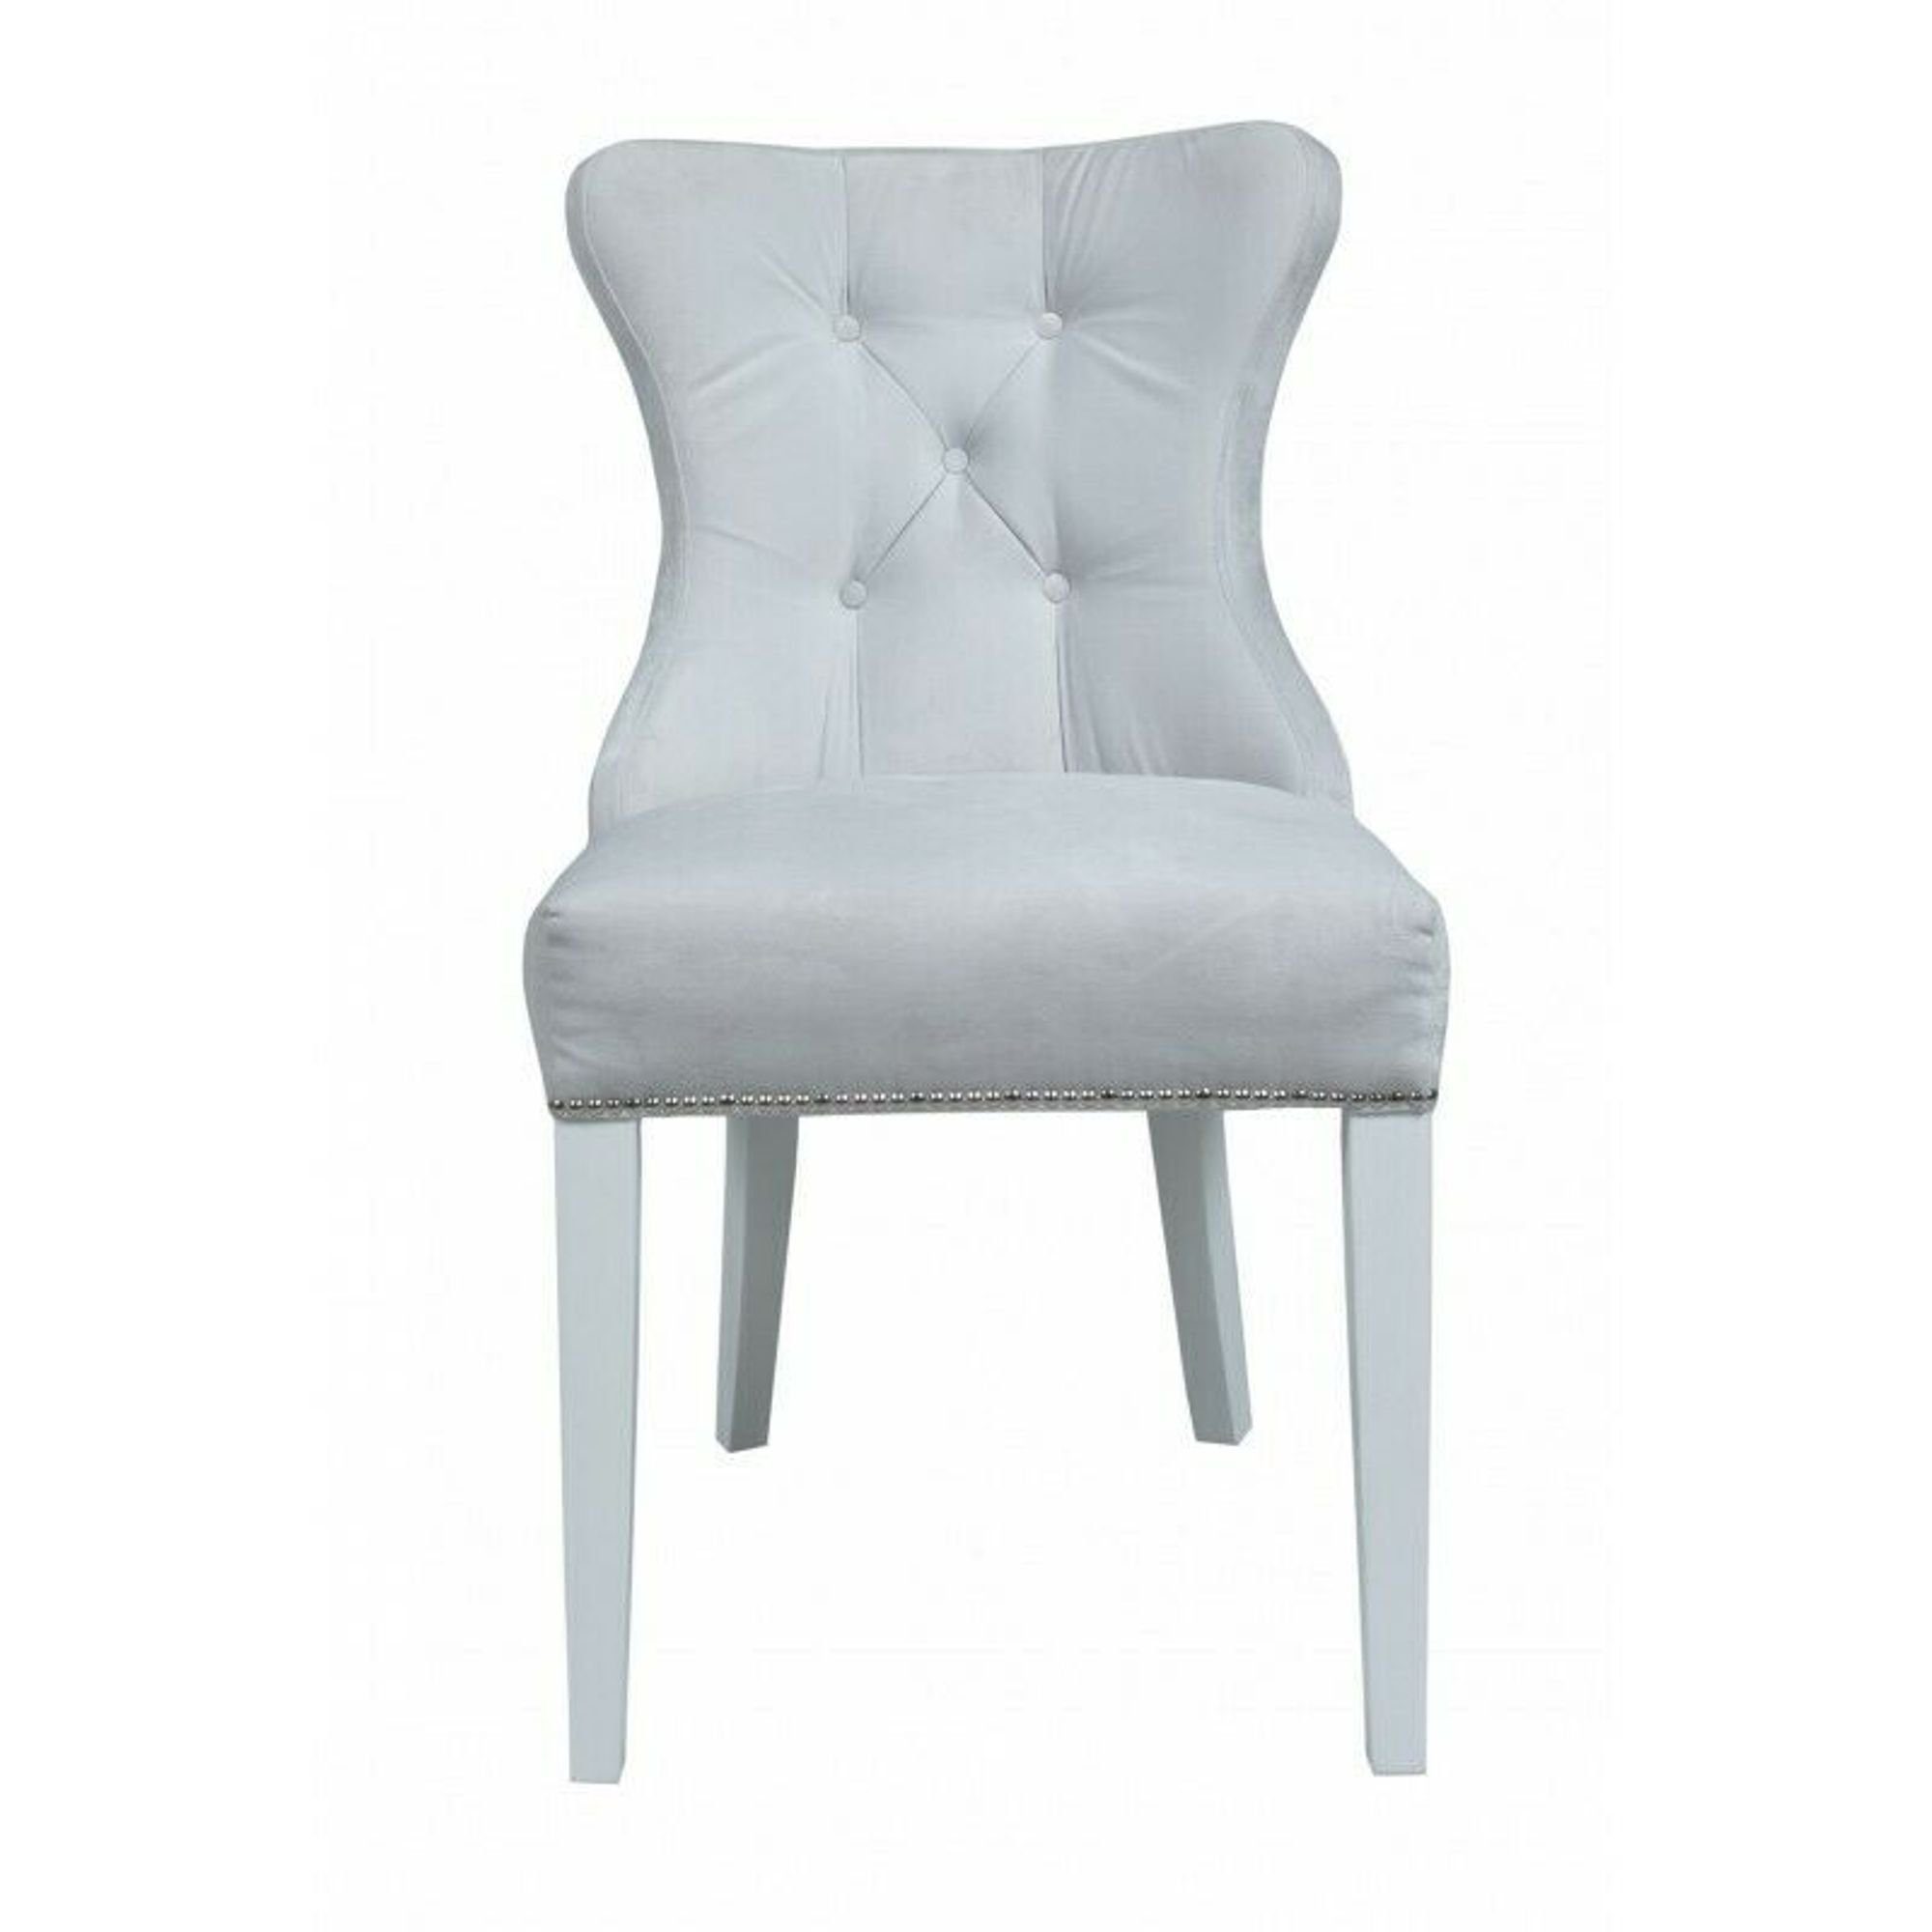 JVmoebel Stuhl, Klassische Chesterfield Sessel Stuhl 1 Sitzer Lehn Sühle Textil Grau Polster